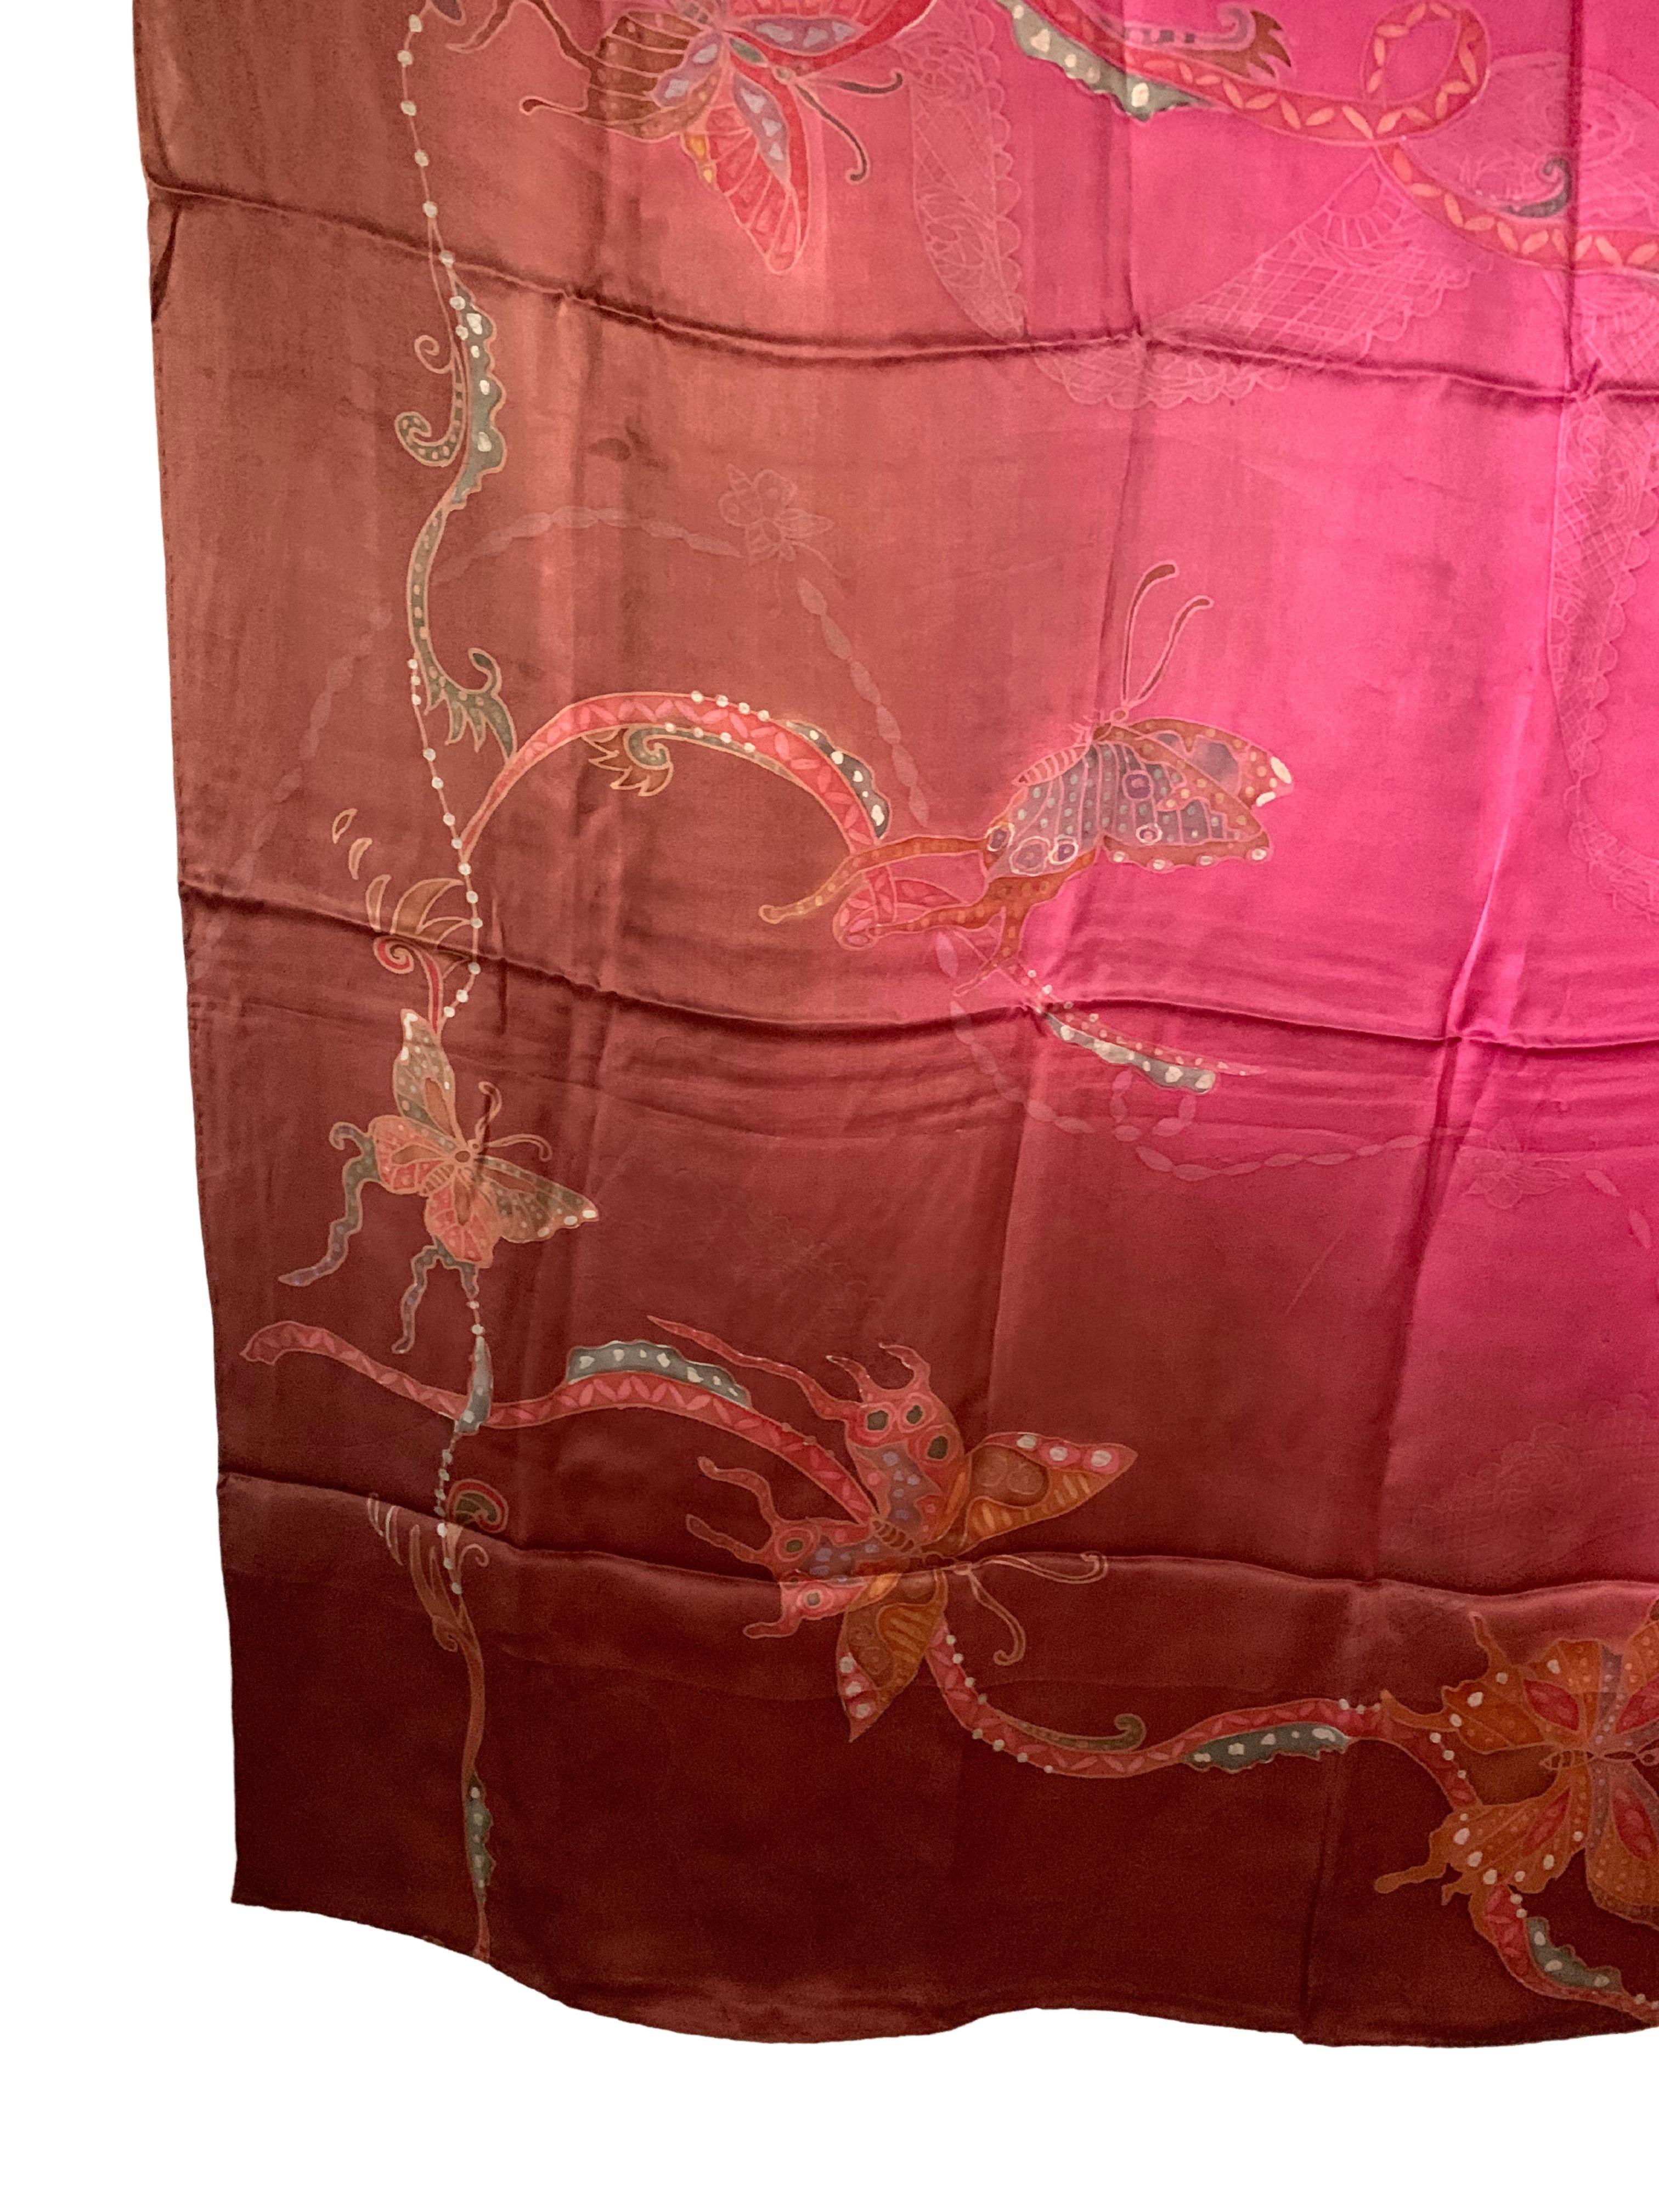 Un merveilleux textile de soie artisanal de Malaisie avec des détails et des nuances étonnants. Un merveilleux objet décoratif pour apporter chaleur et couleur à tout espace. Ce textile a été fabriqué à la main par des tisserands locaux.